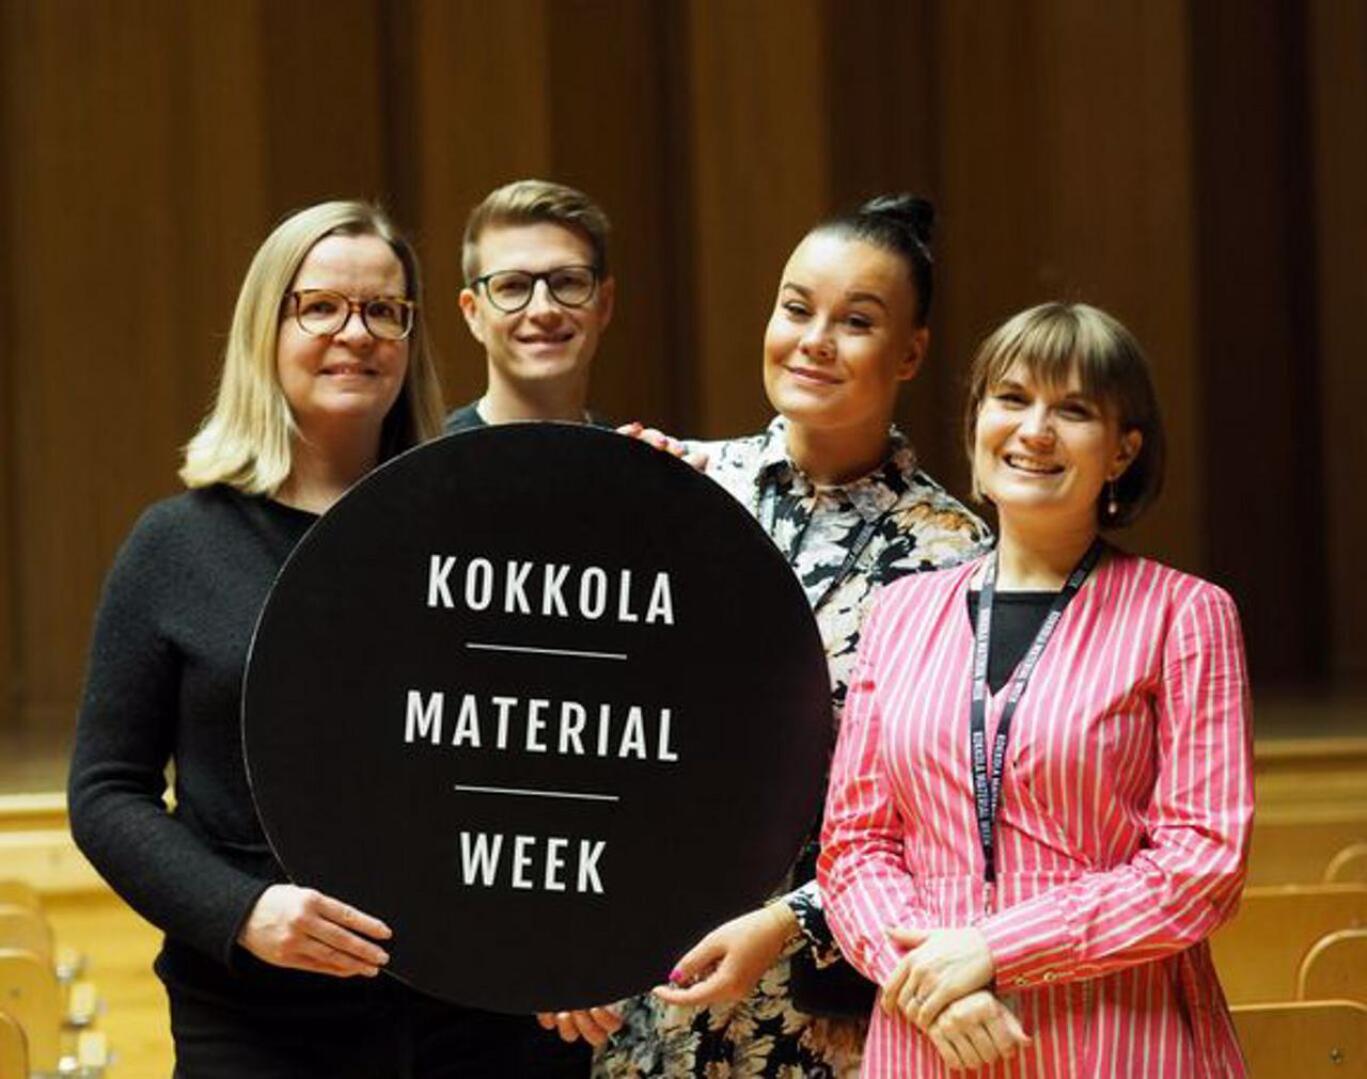 Kokkola Material Week siirtyy Tullipakkahuoneelta Snellman-salille tilanpuutteen vuoksi. Kuvassa Kosekin Johanna Haikola, Pekka Pohjola, Titta Tilvis ja Nora Birkman Neunstedt.